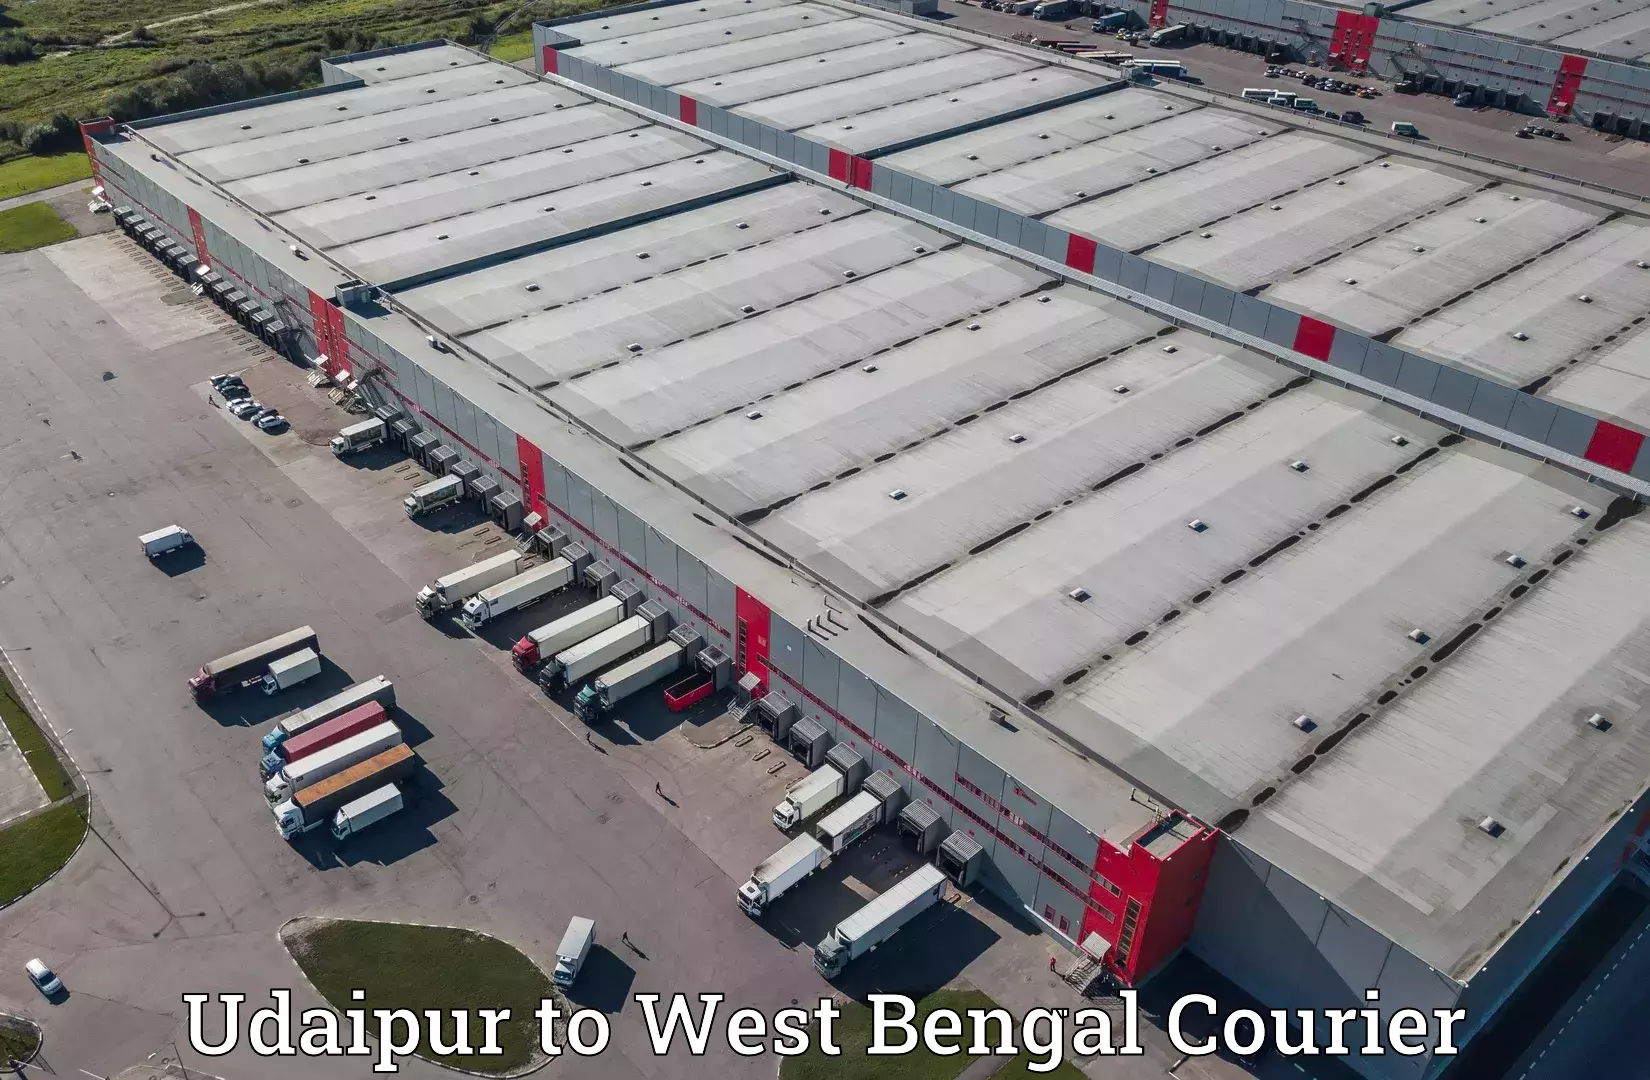 Cargo delivery service Udaipur to Barjora